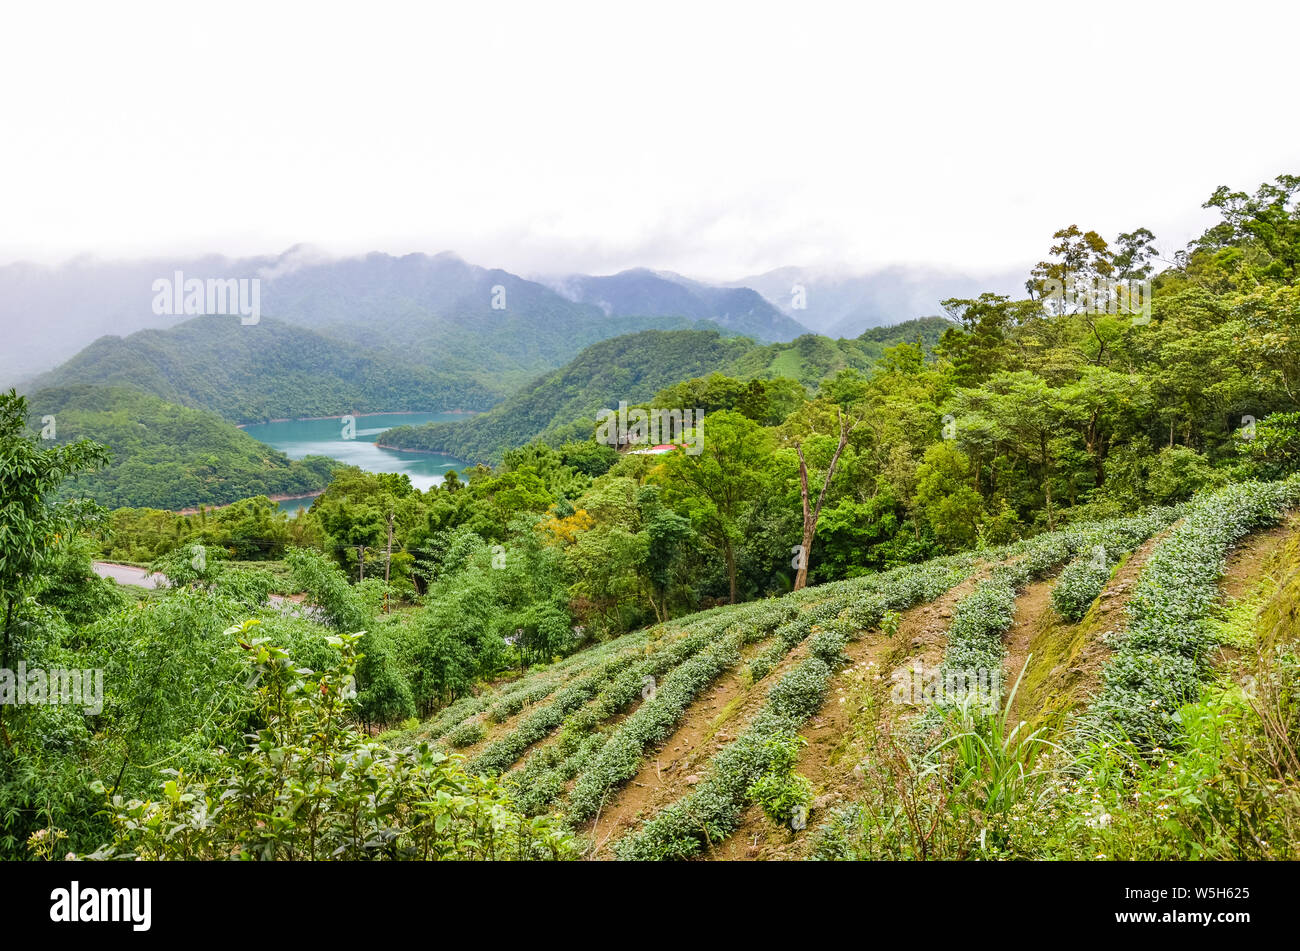 Teeplantagen auf Pisten durch Tausend Insel See umgeben von tropischen Bäumen und Wald, Taiwan, Asien. Moody Landschaft, nebligen Wetter. Taiwanesische Natur. Reiseziele. Oolong Tee Plantage. Stockfoto